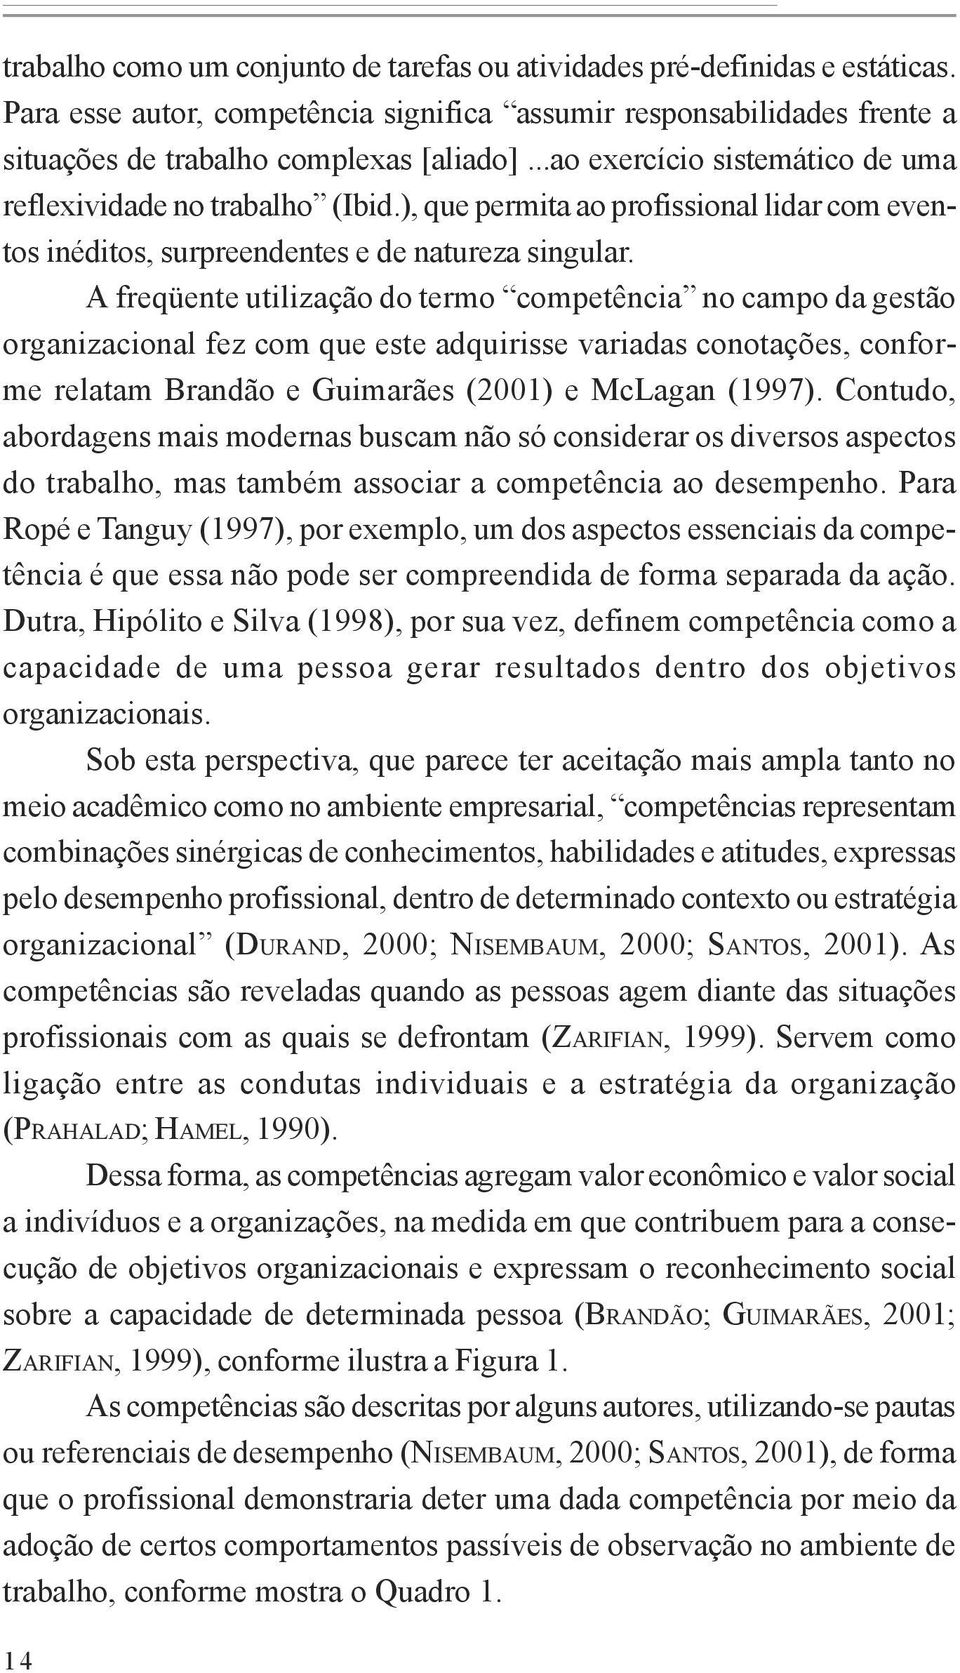 A freqüente utilização do termo competência no campo da gestão organizacional fez com que este adquirisse variadas conotações, conforme relatam Brandão e Guimarães (2001) e McLagan (1997).